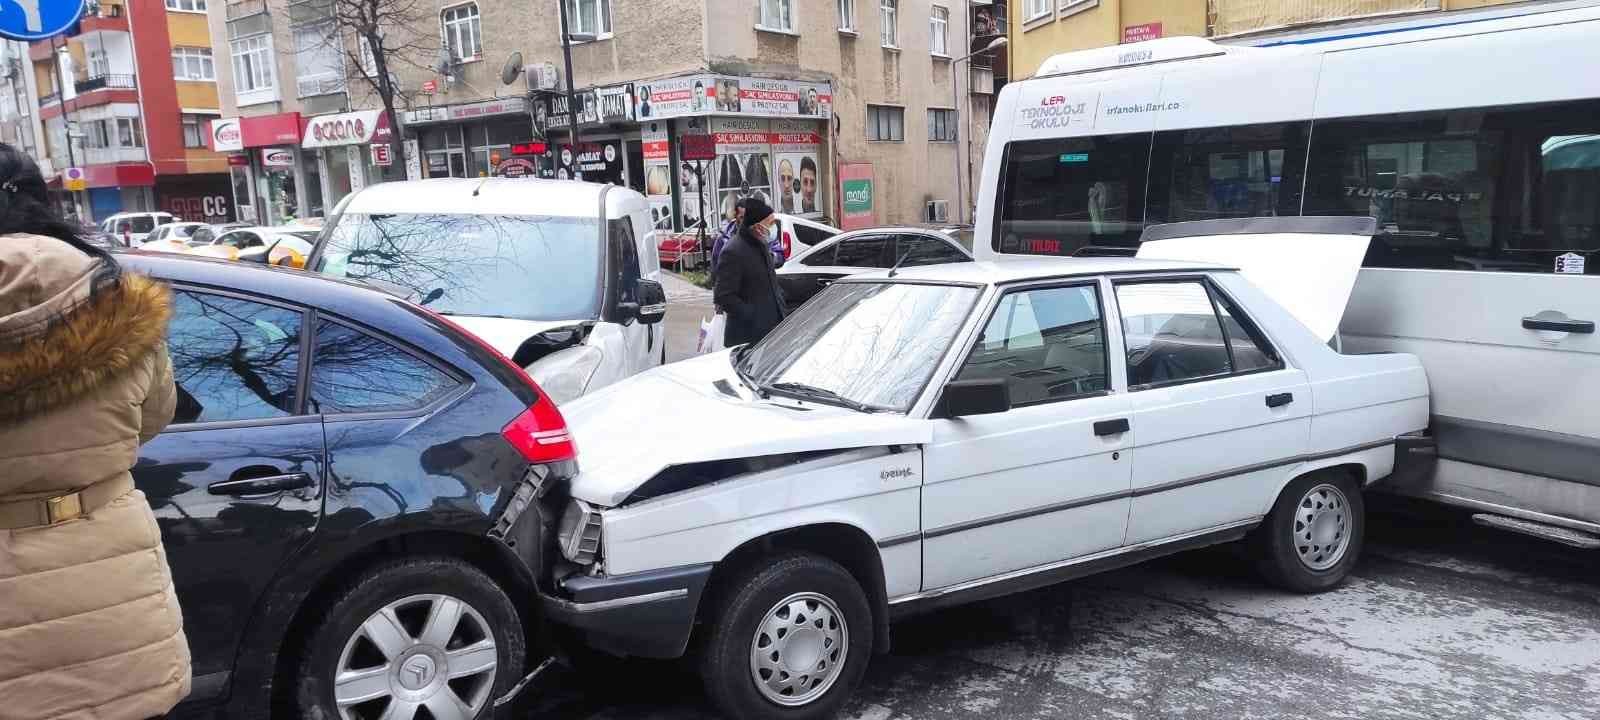 Freni boşalan otomobil park halindeki araçlara çarptı, 1 çocuk ezilmekten kurtuldu #istanbul